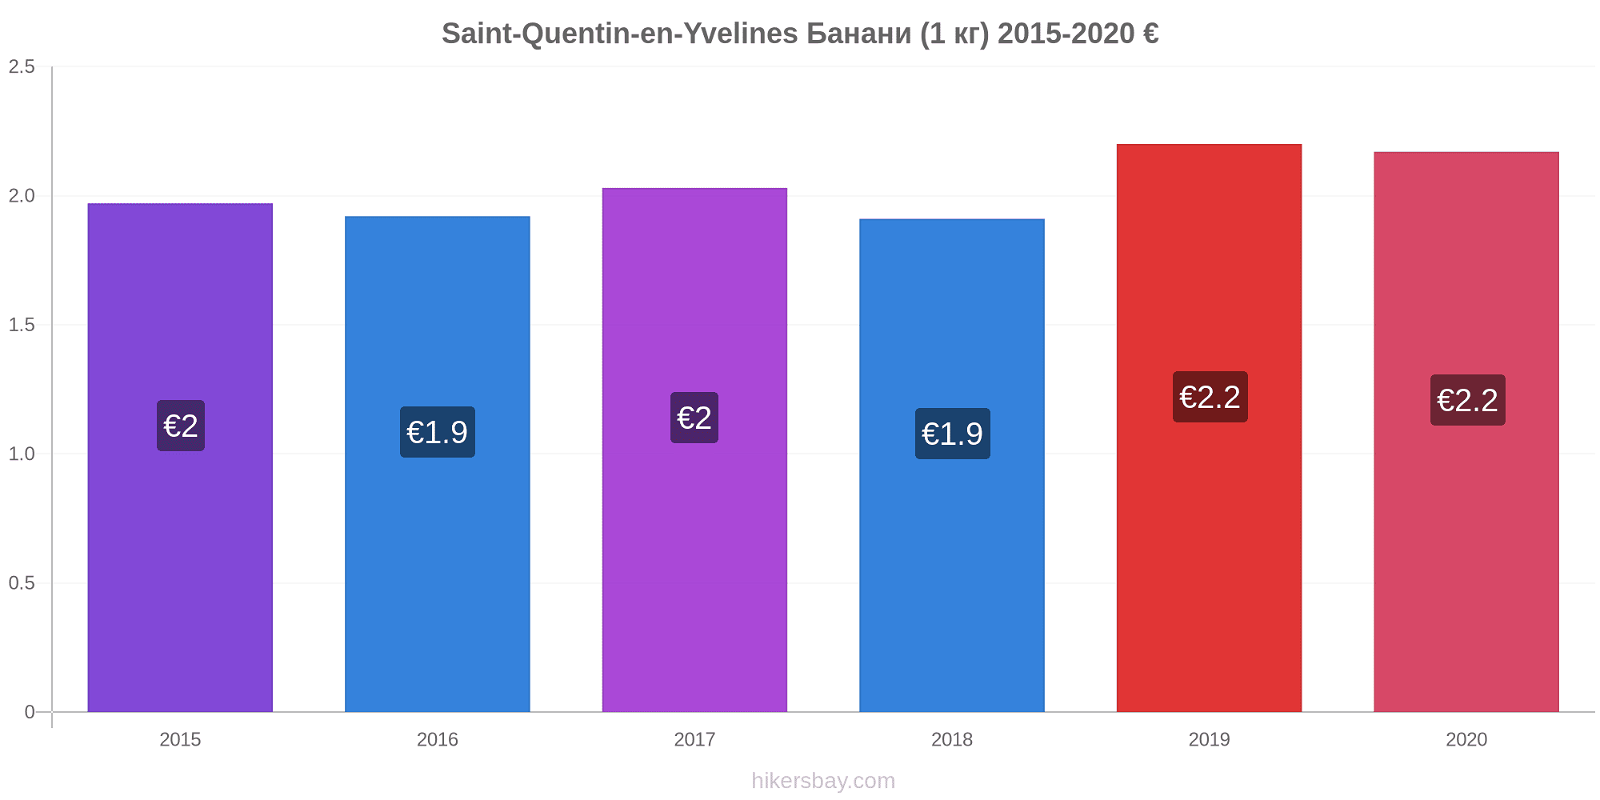 Saint-Quentin-en-Yvelines зміни цін Банани (1 кг) hikersbay.com